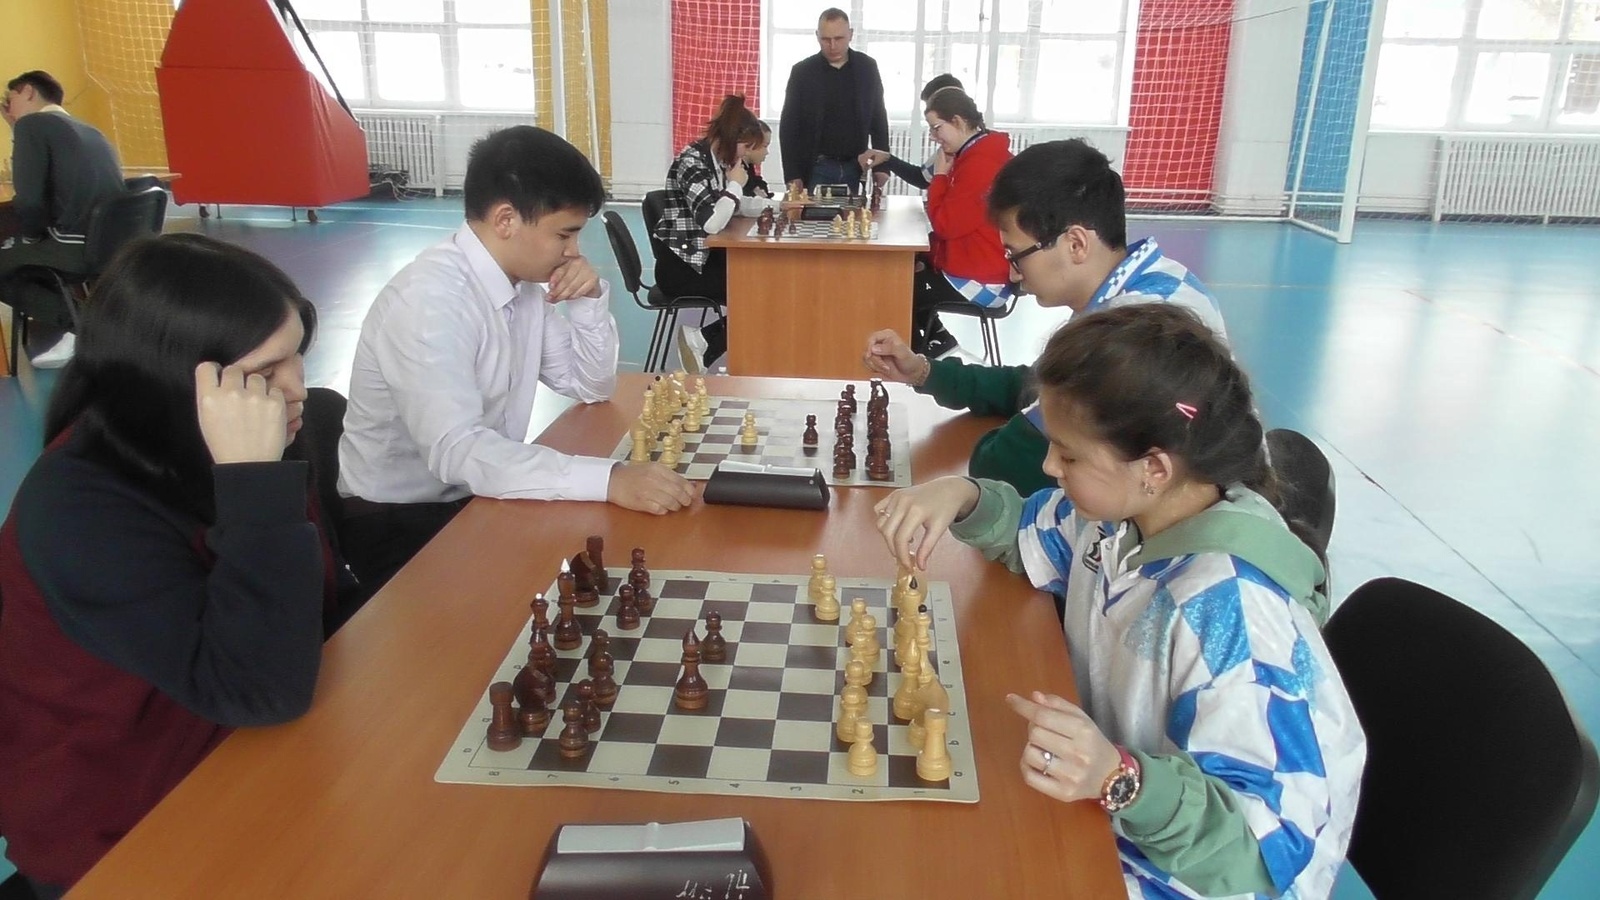 В Башкирии назвали призеров шахматного турнира для учащихся коррекционных школ